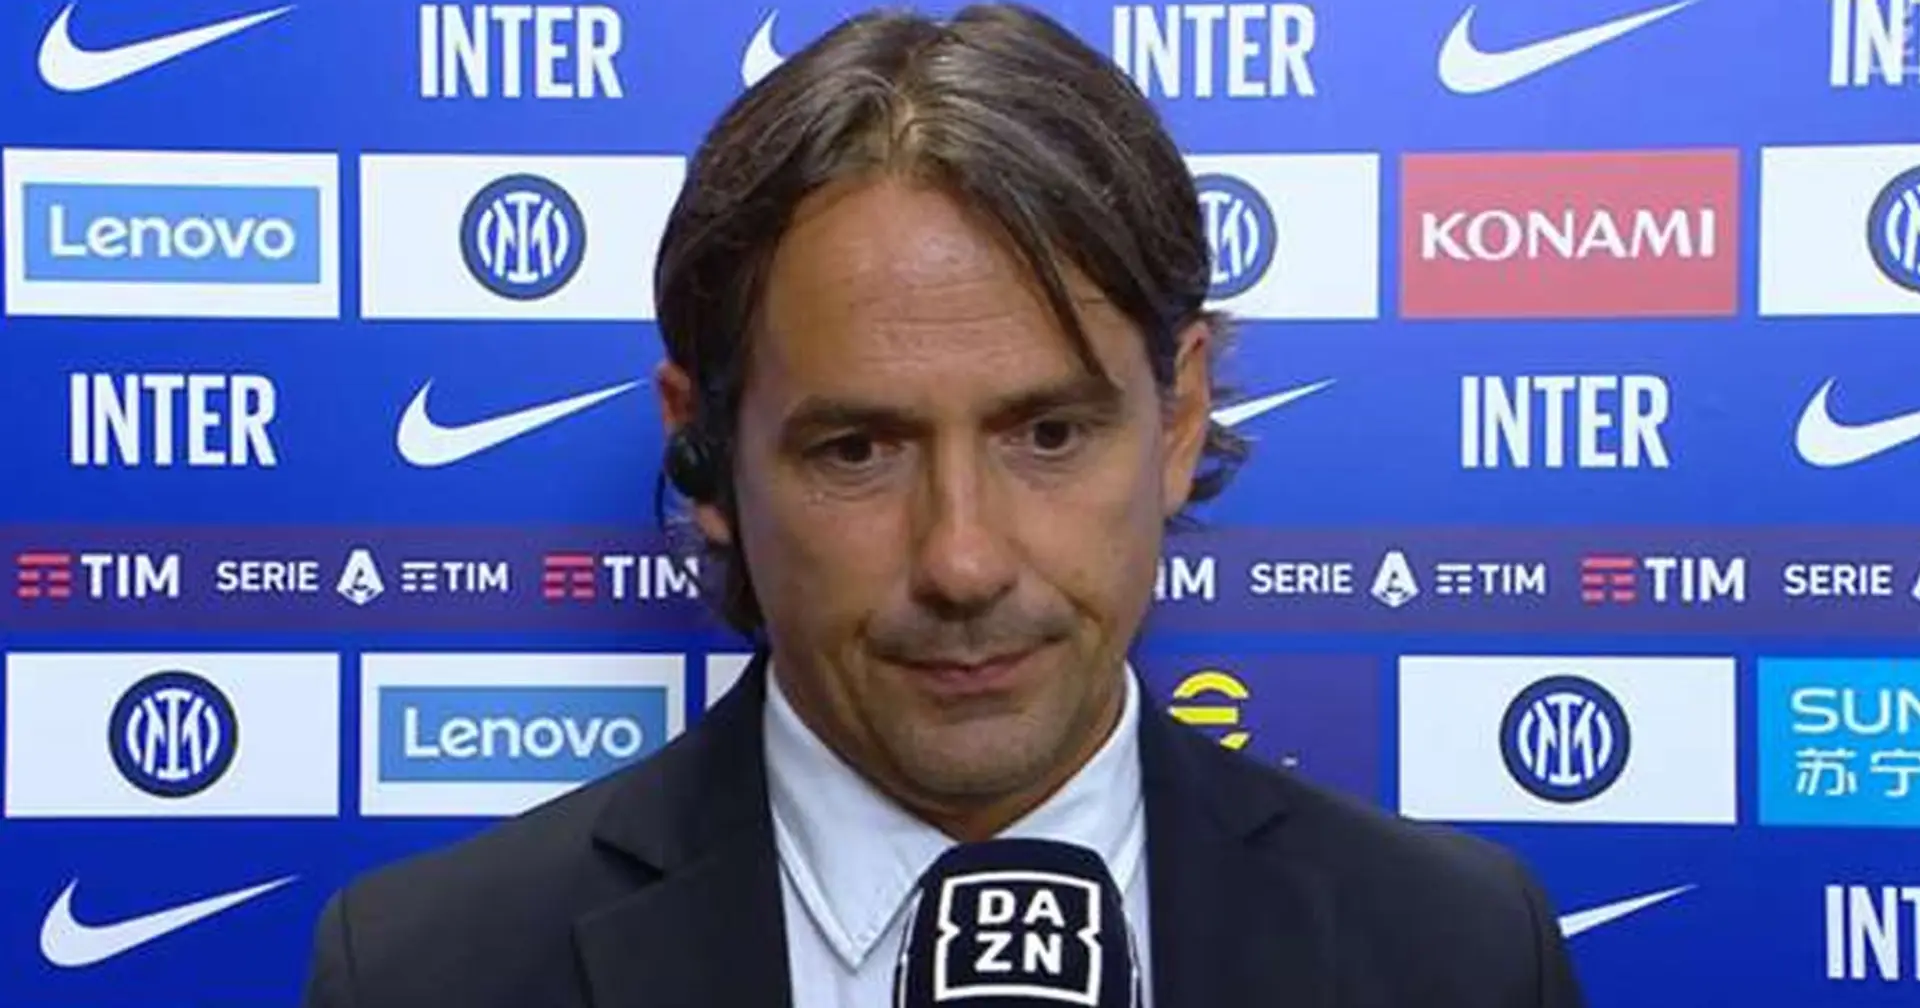 "3 anni che giochiamo bene": Inzaghi si toglie i sassolini della scarpa dopo l'Udinese, l'Inter è dominante